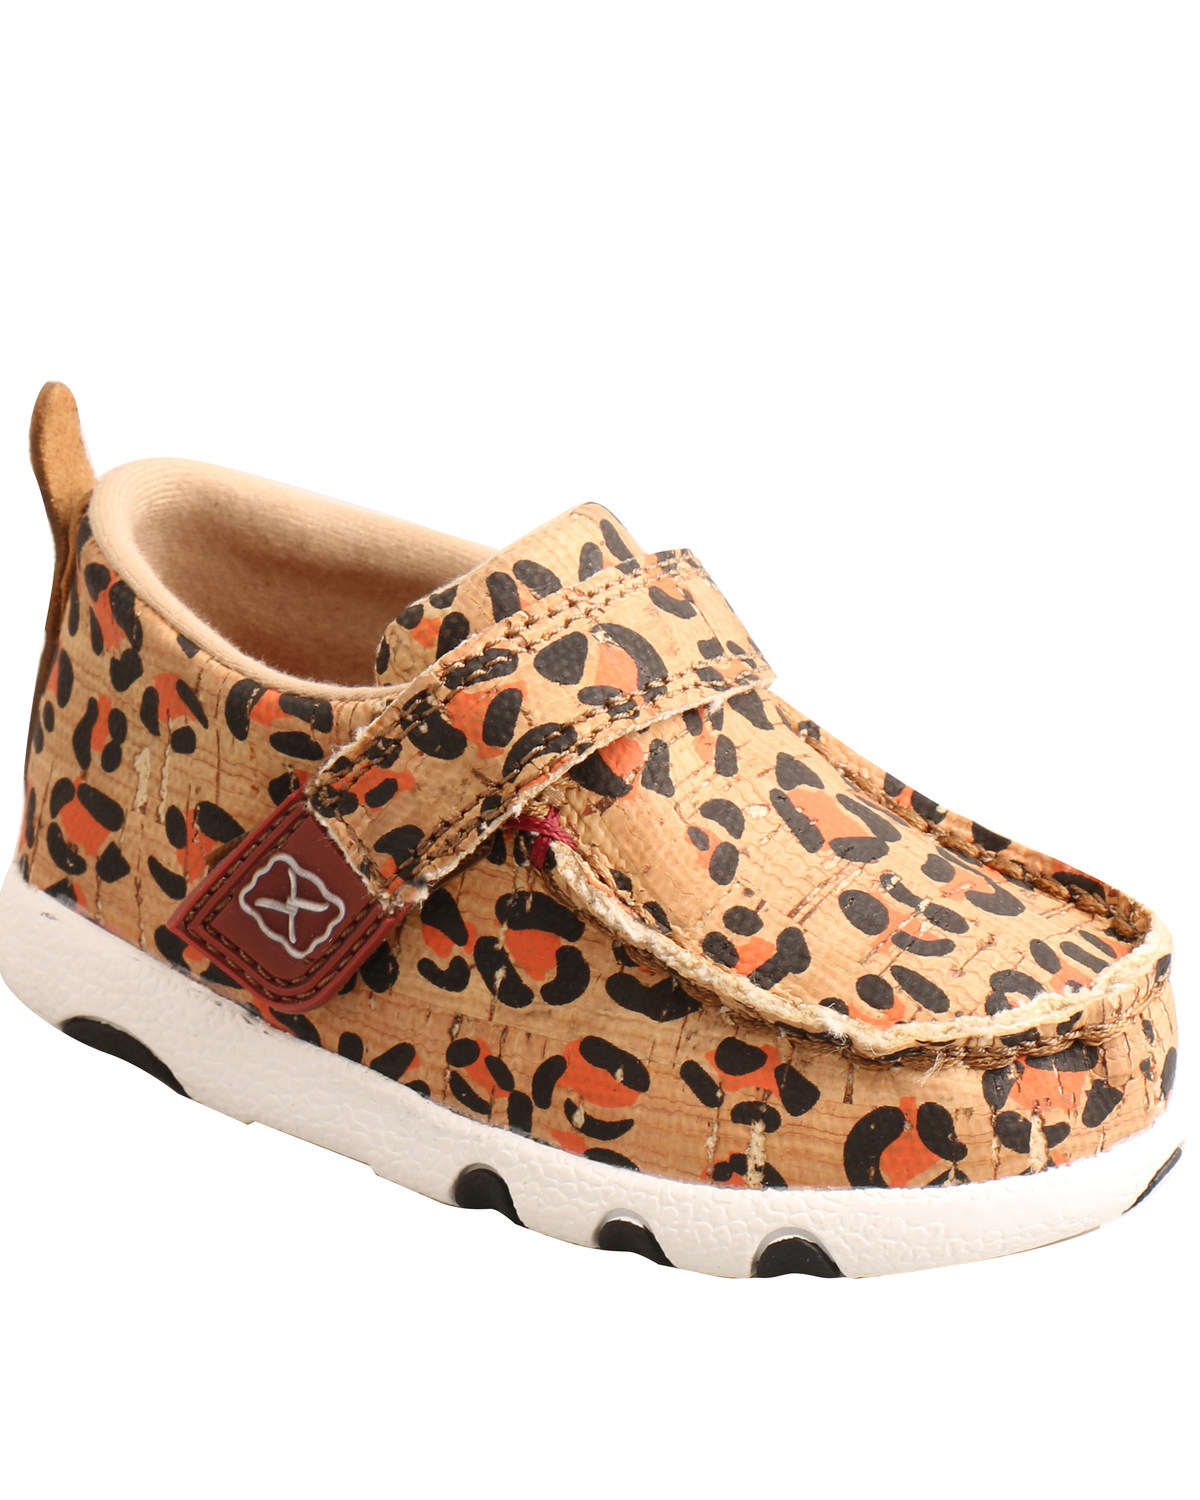 Twisted X Infant Girls' Leopard Print Boots - Moc Toe